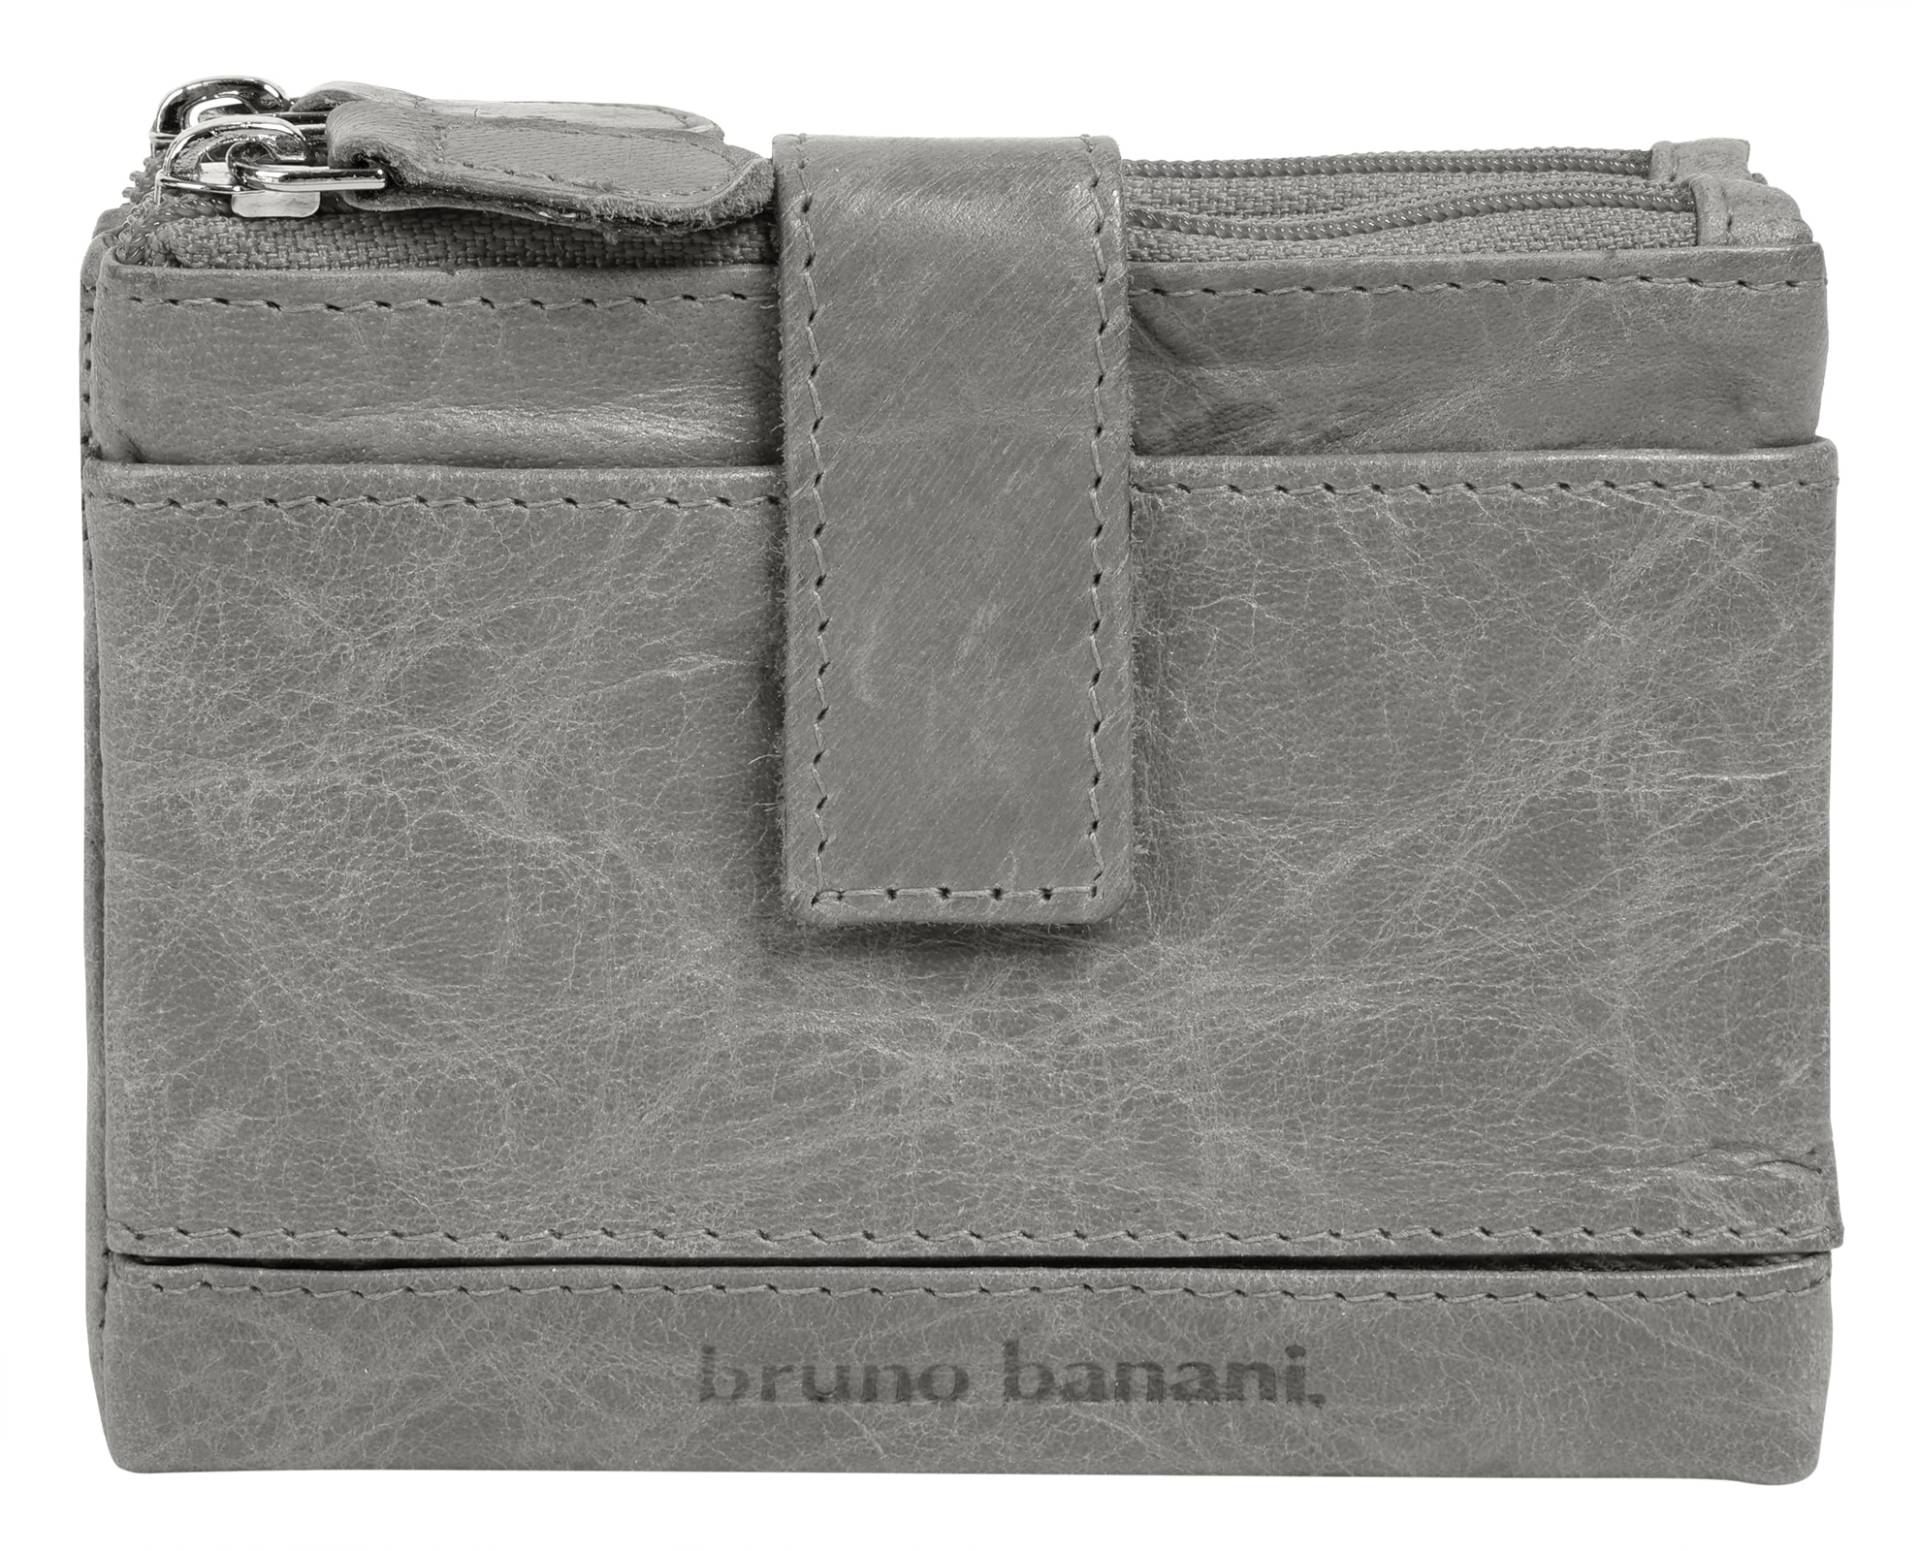 Bruno Banani Geldbörse von Bruno Banani